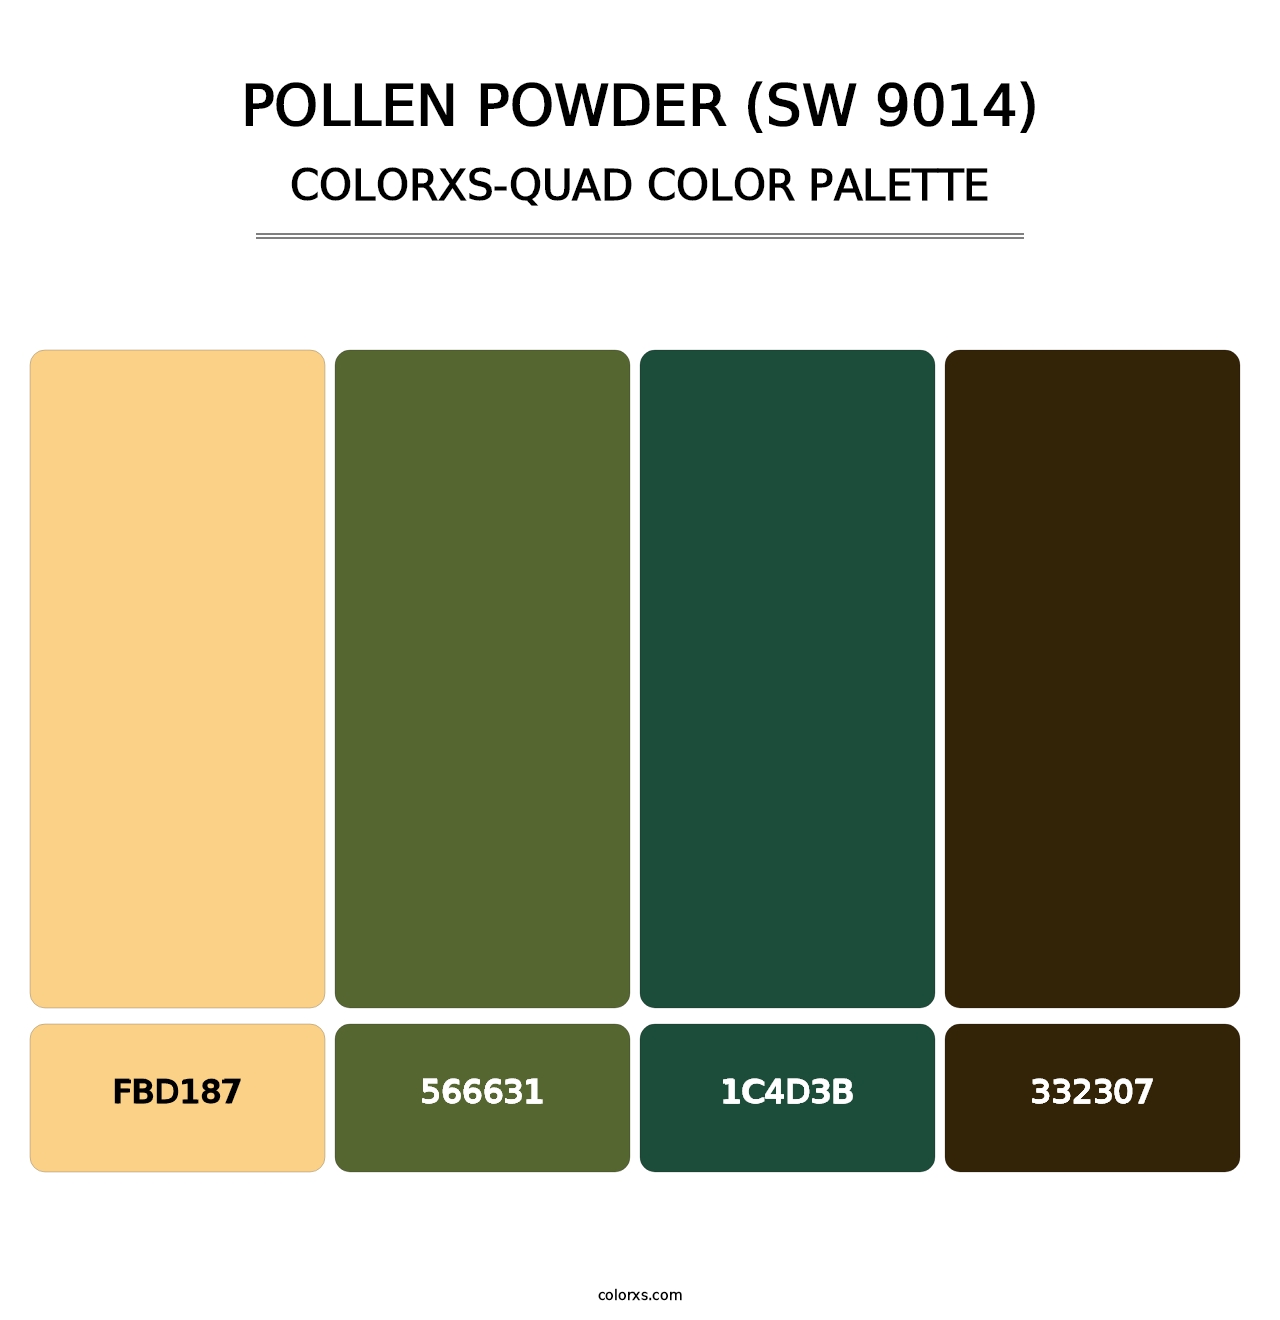 Pollen Powder (SW 9014) - Colorxs Quad Palette